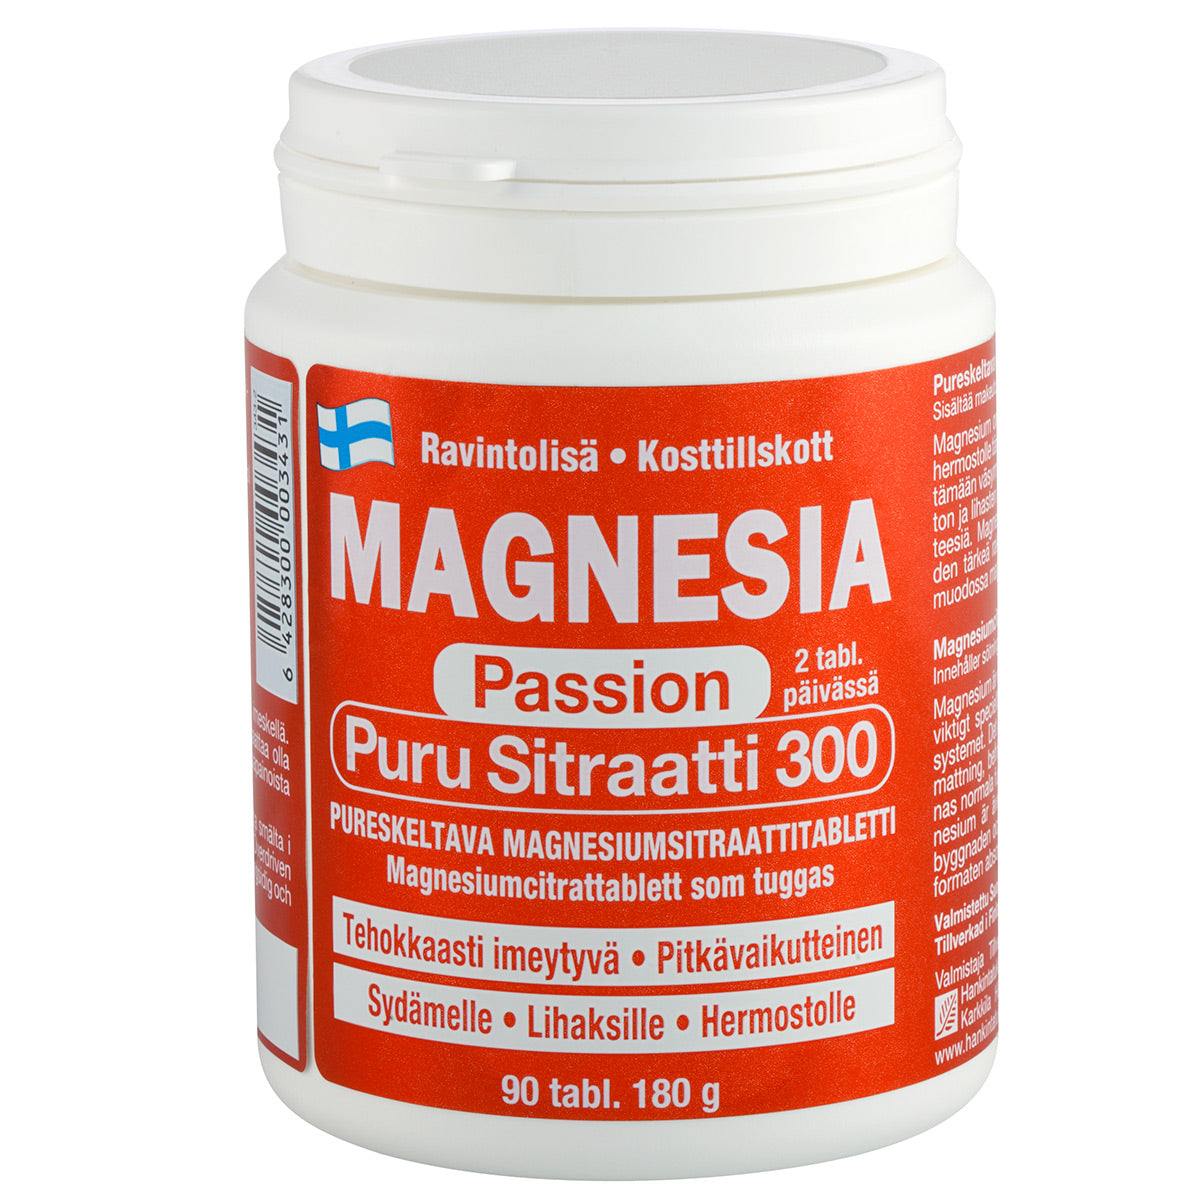 Magnesia Passion Puru Sitraatti 300 - Magnesiumsitraattitabletti 90 tabl.